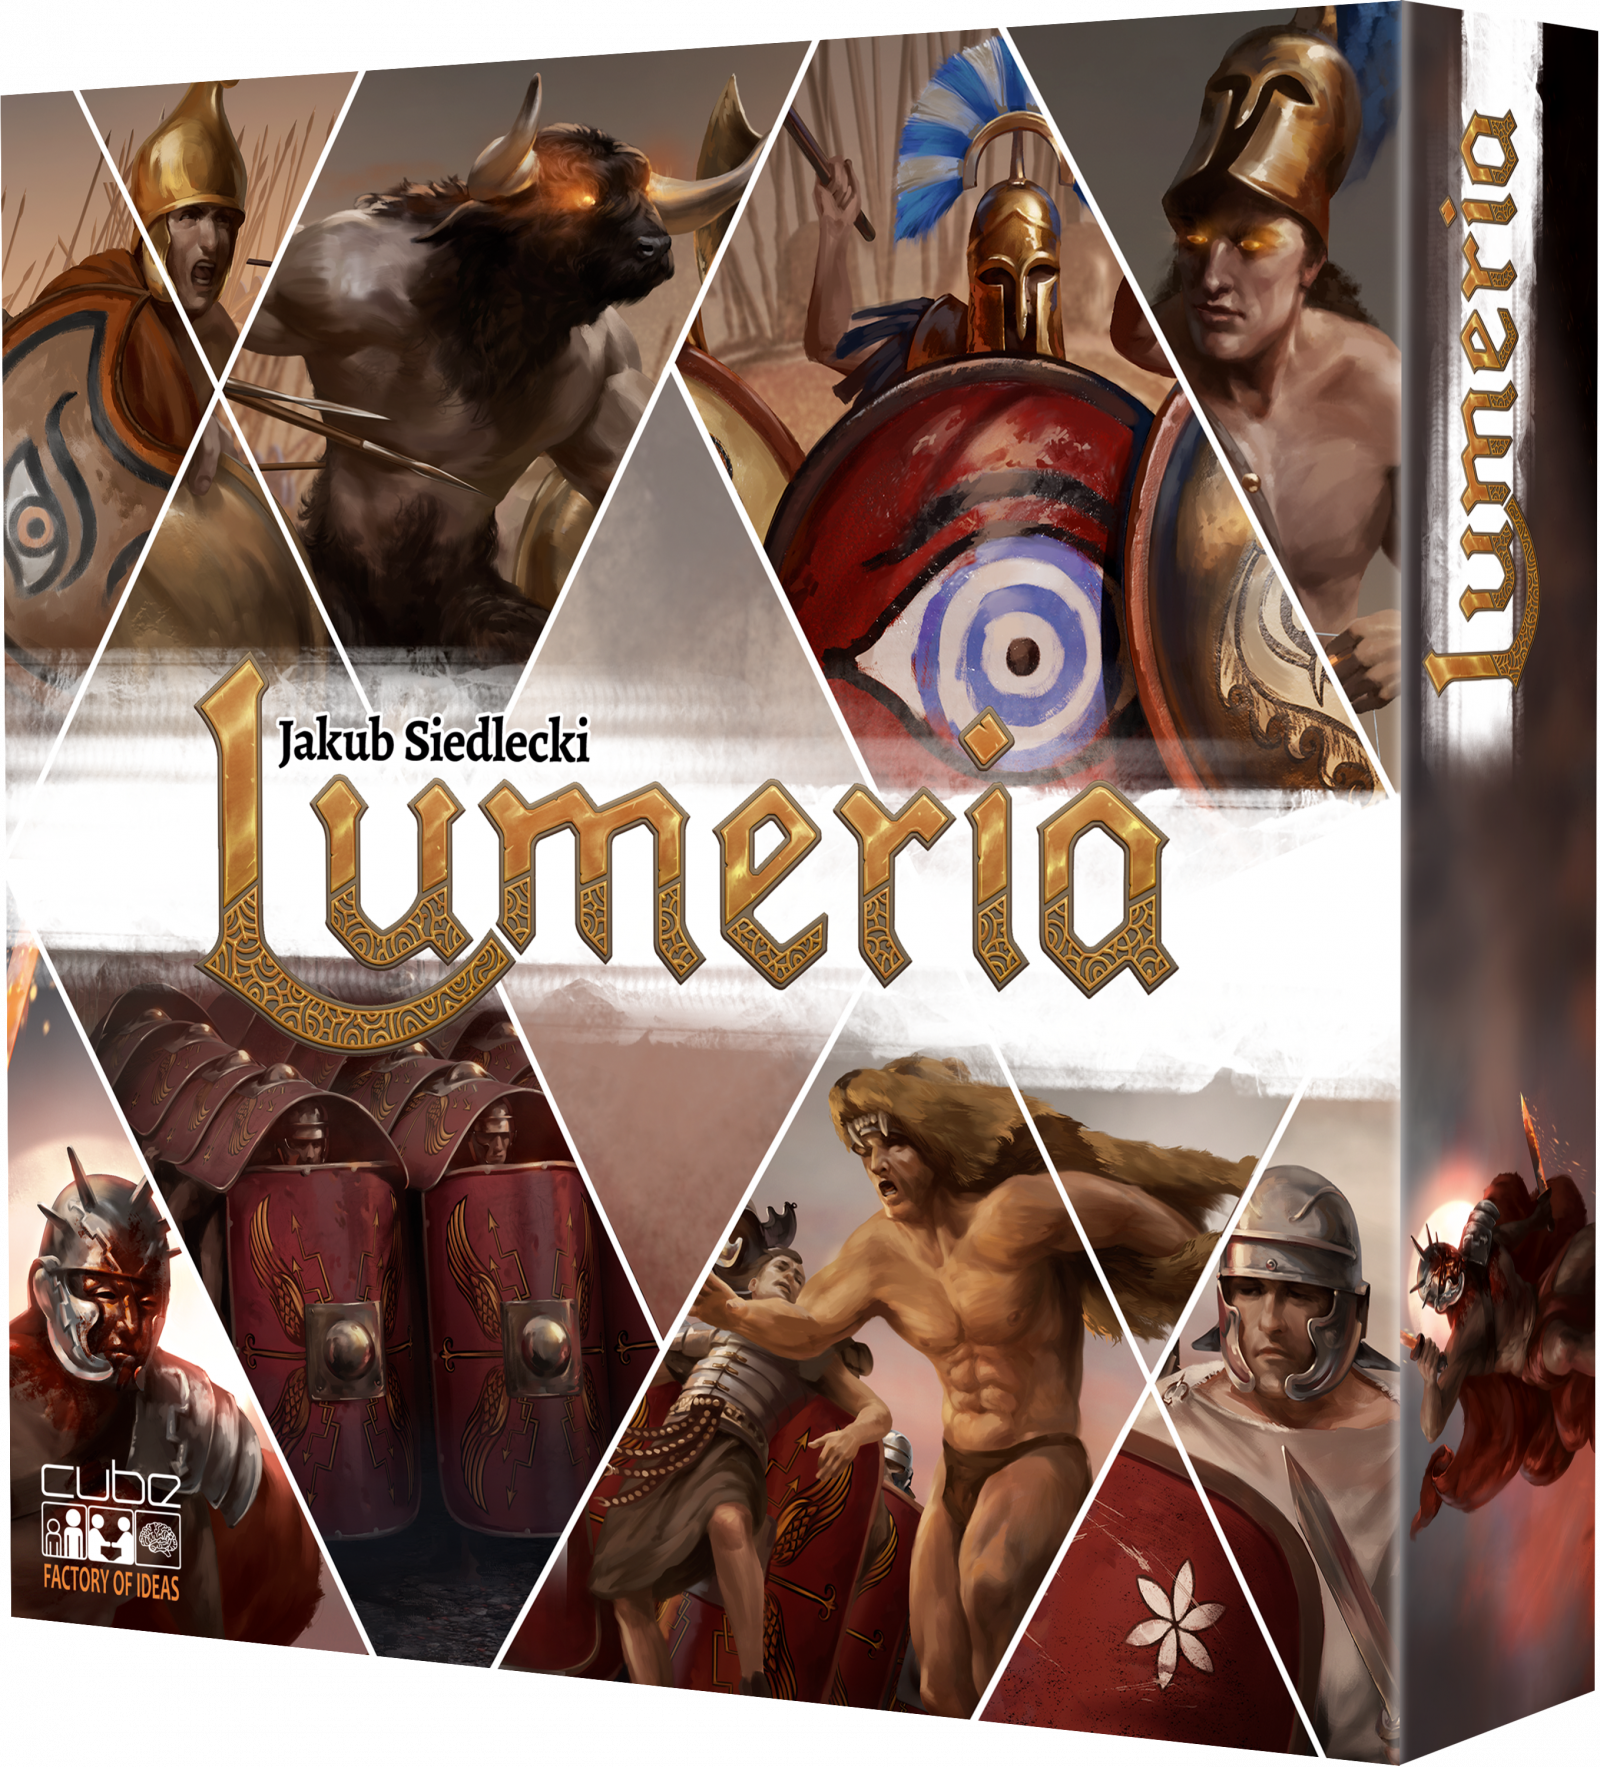 Lumeria: Grecy vs Rzymianie